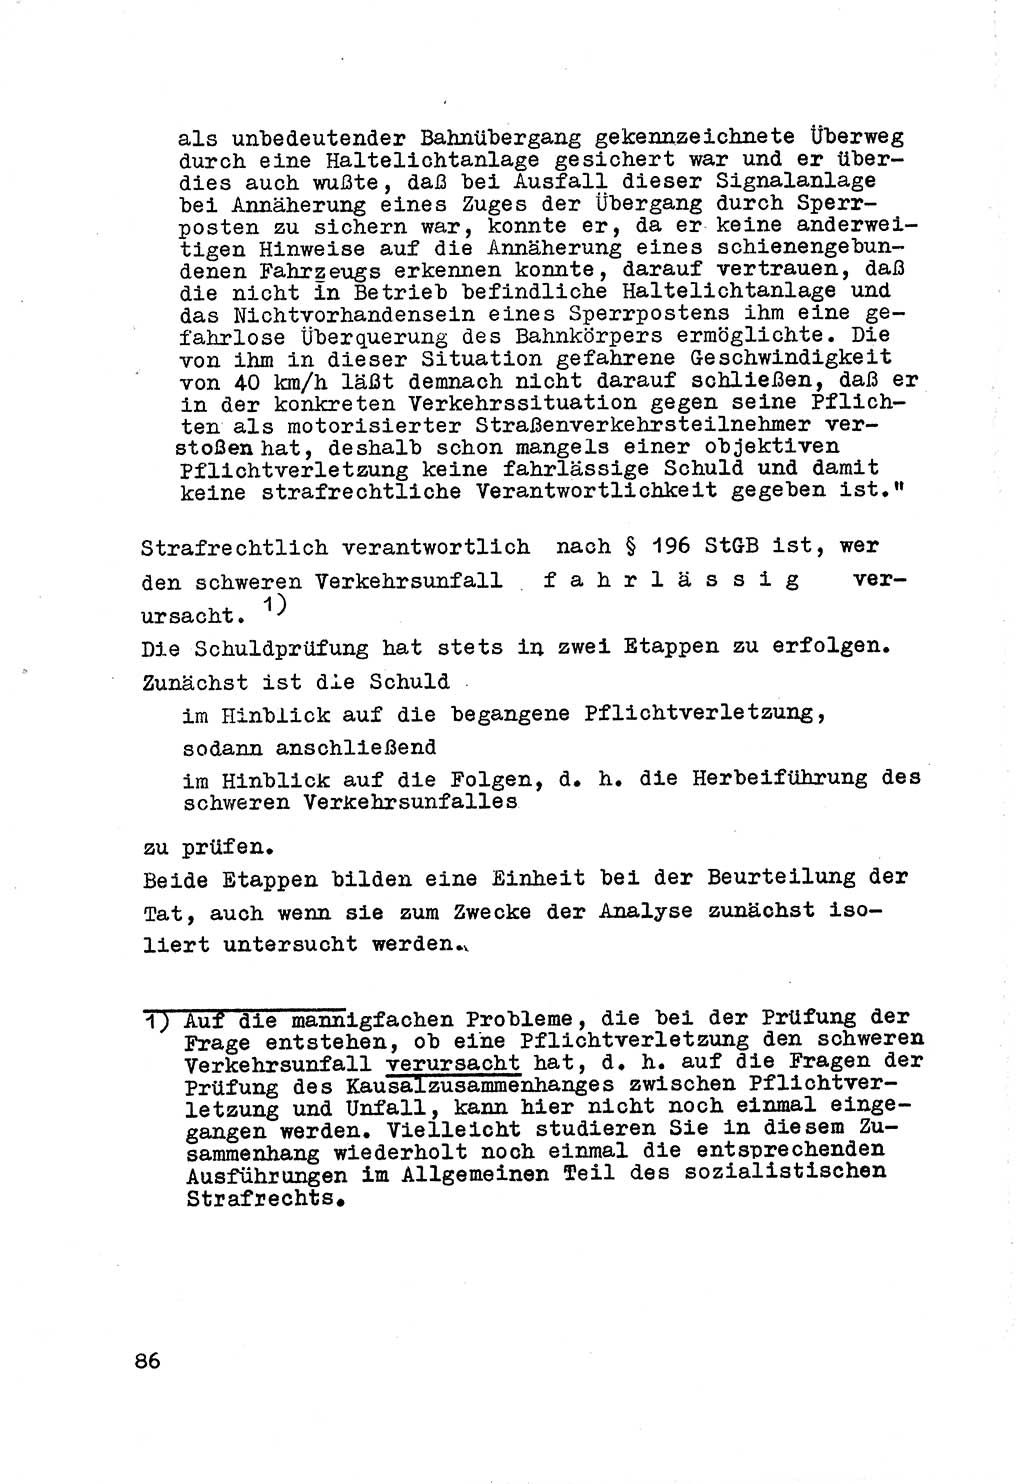 Strafrecht der DDR (Deutsche Demokratische Republik), Besonderer Teil, Lehrmaterial, Heft 7 1970, Seite 86 (Strafr. DDR BT Lehrmat. H. 7 1970, S. 86)